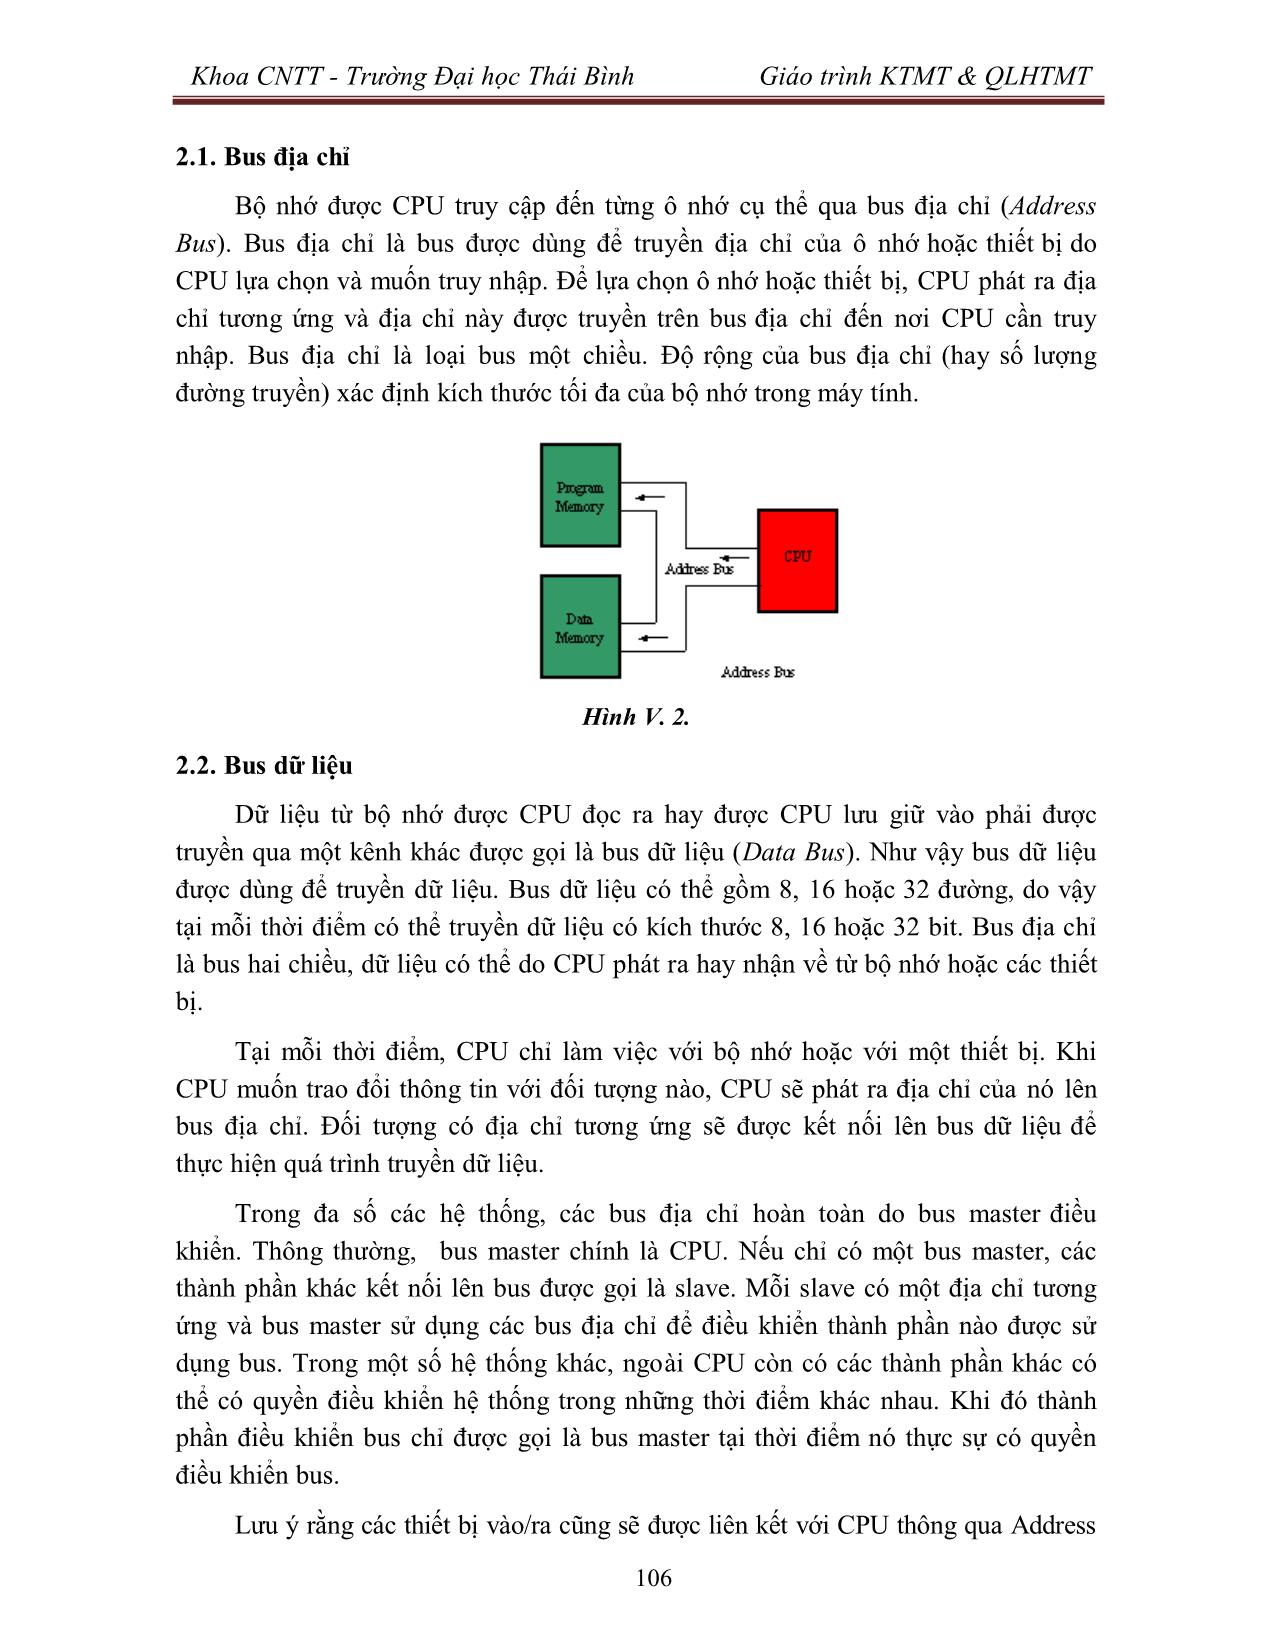 Giáo trình Kiến trúc máy tính & Quản lý hệ thống máy tính (Phần 2) trang 3